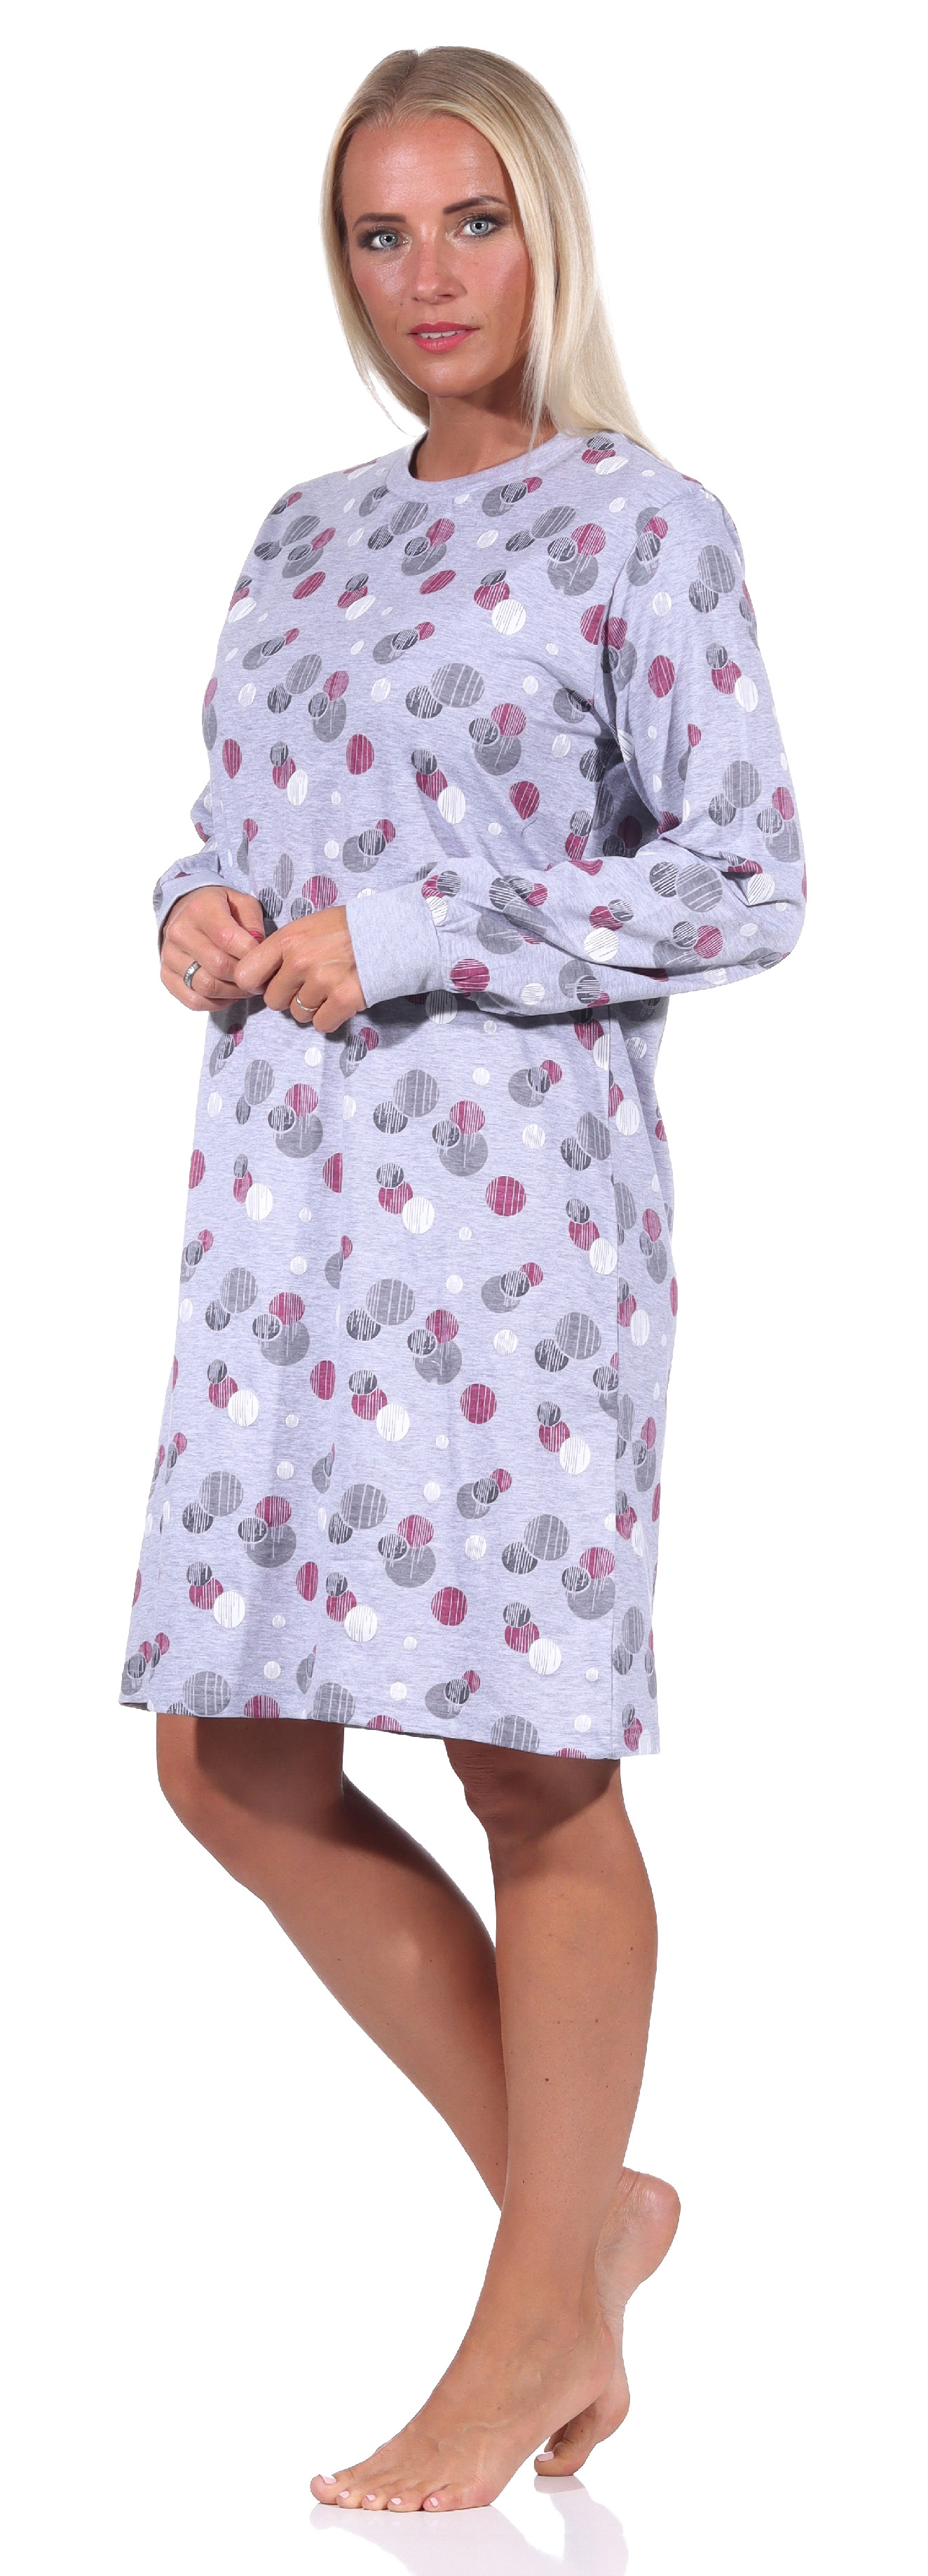 Damen langarm Nachthemd mit Bündchen in eleganter Tupfen / Punkte Optik - 212 213 90 750